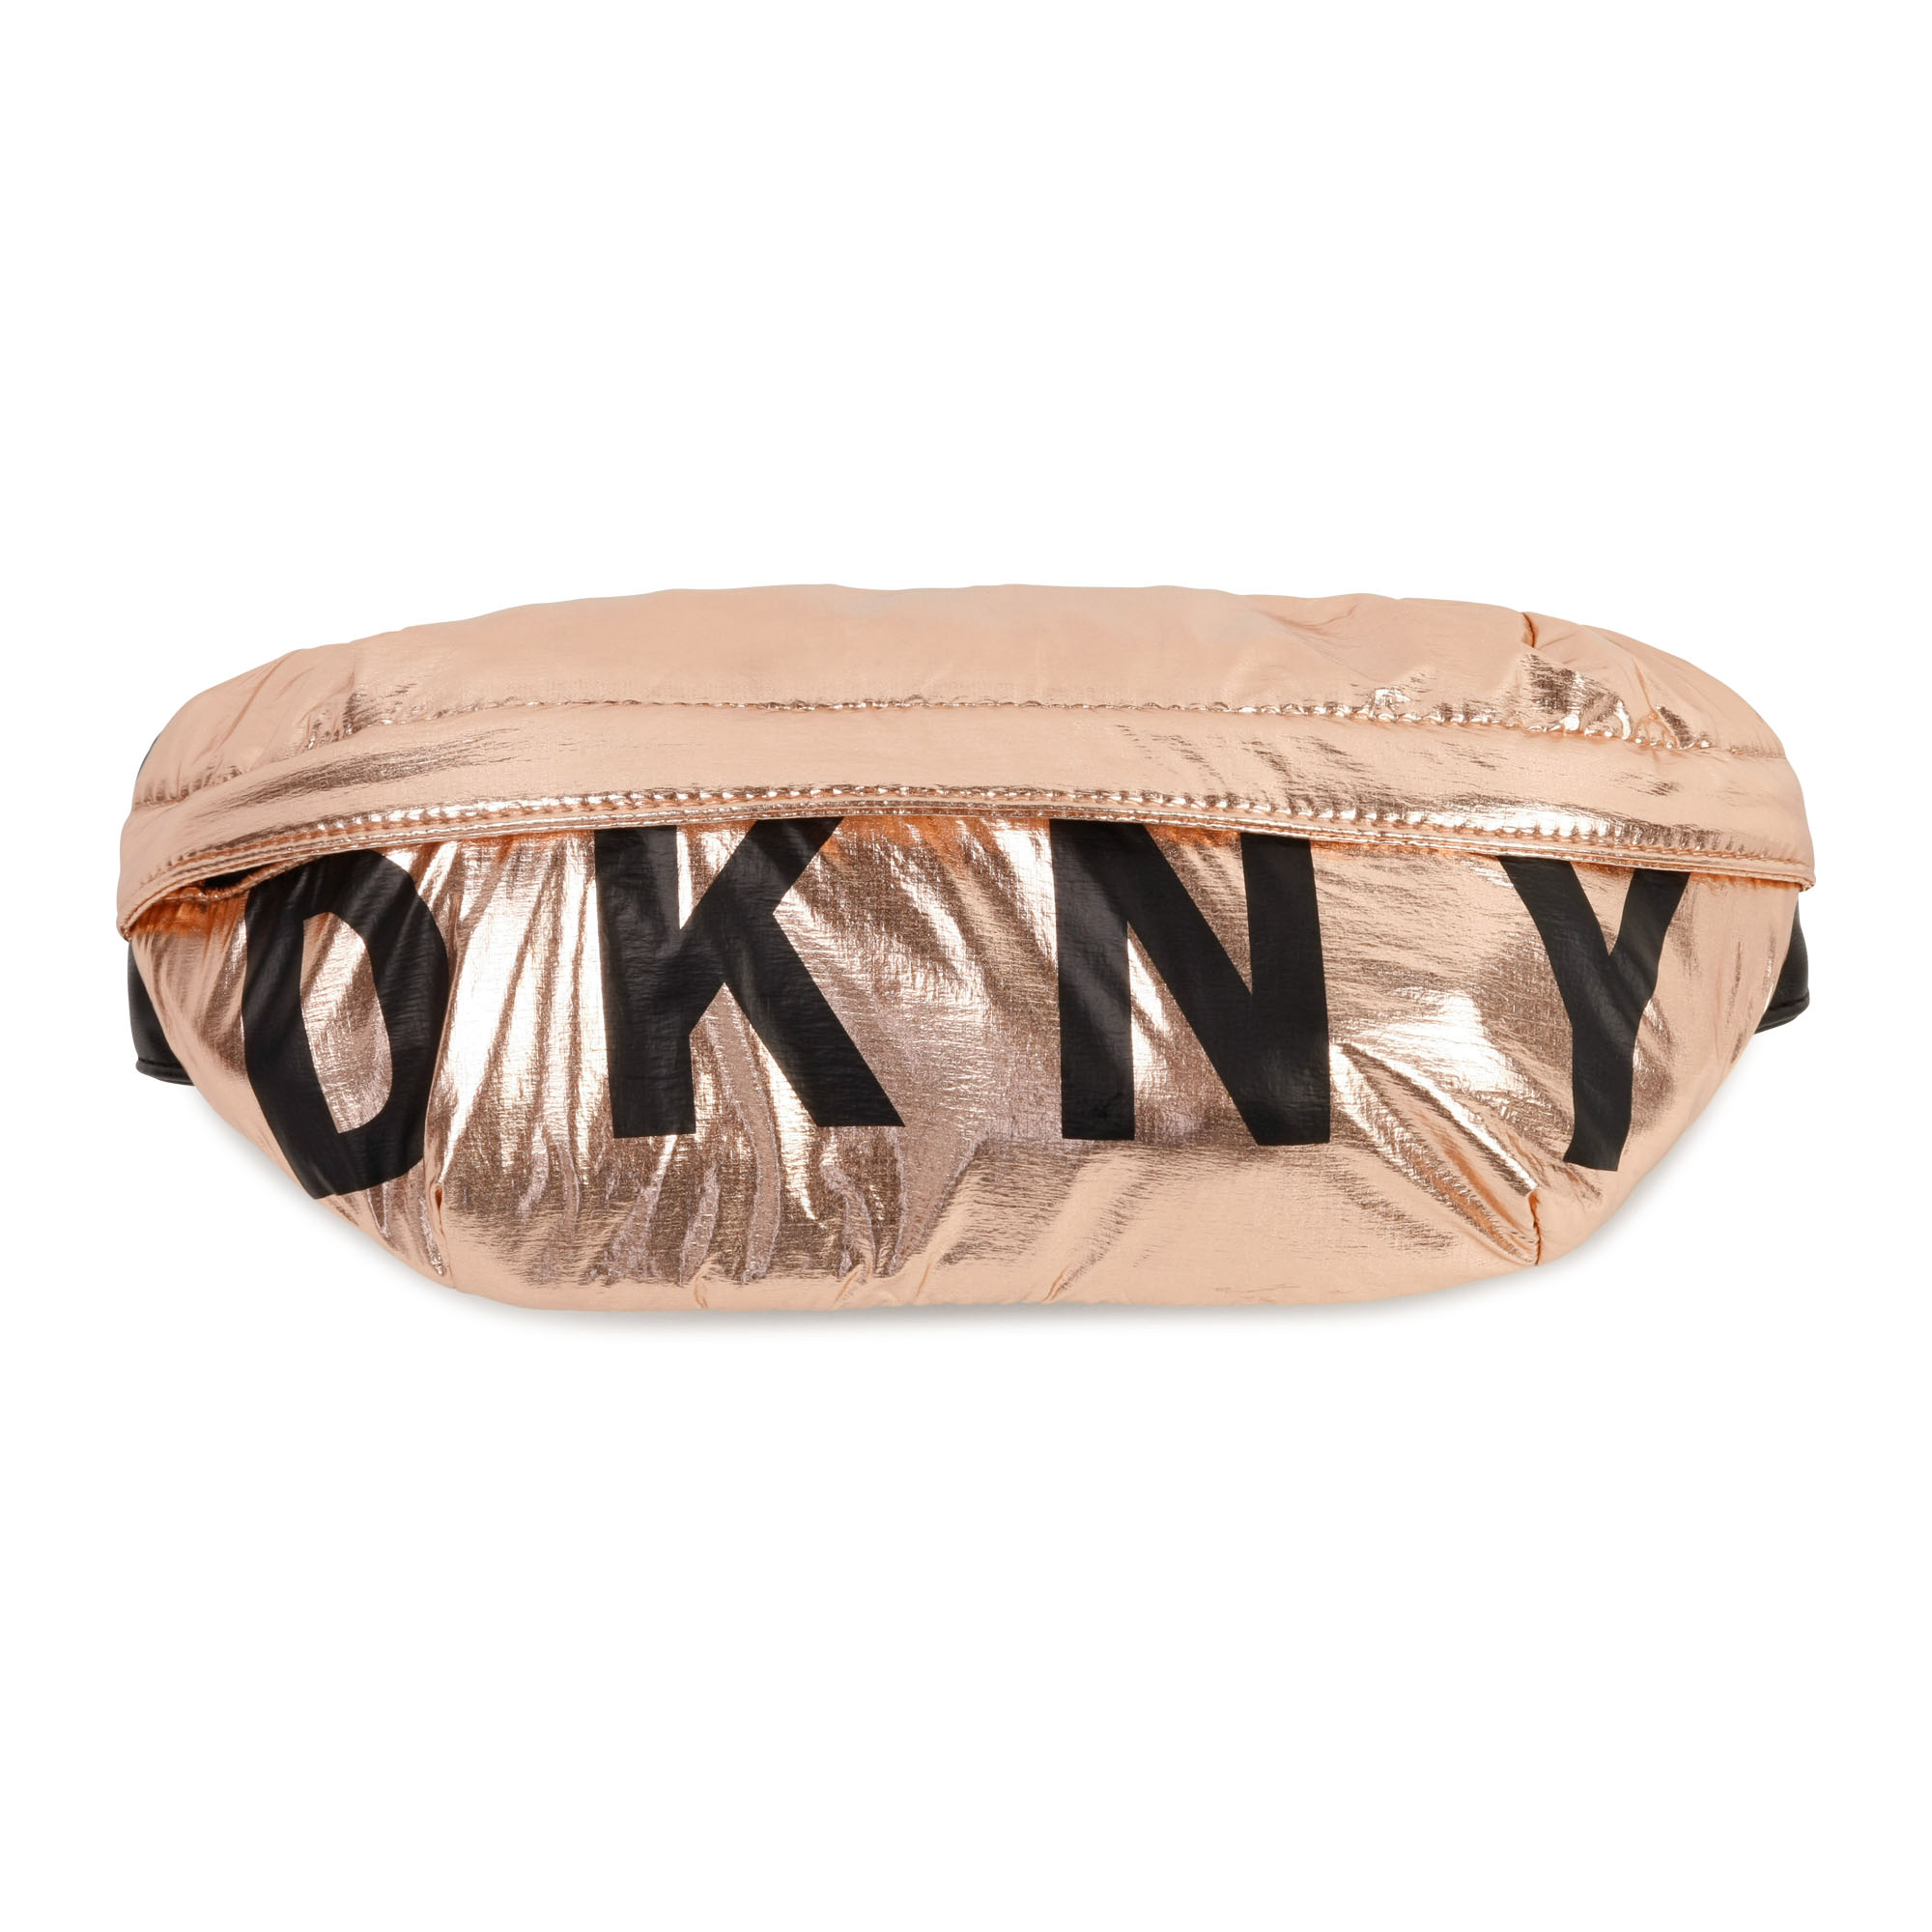 Marsupio metallizzato DKNY Per BAMBINA